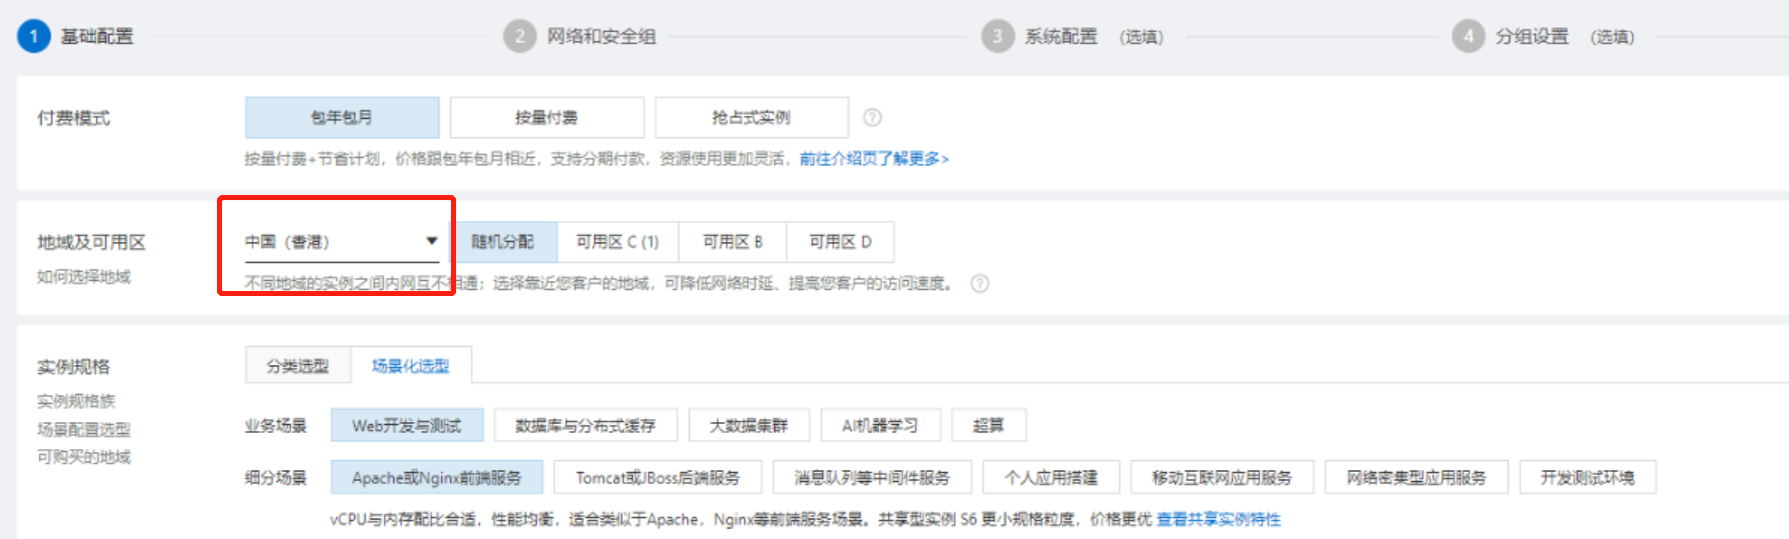 免实名购买阿里云香港服务器教程，只需一个邮箱即可注册购买